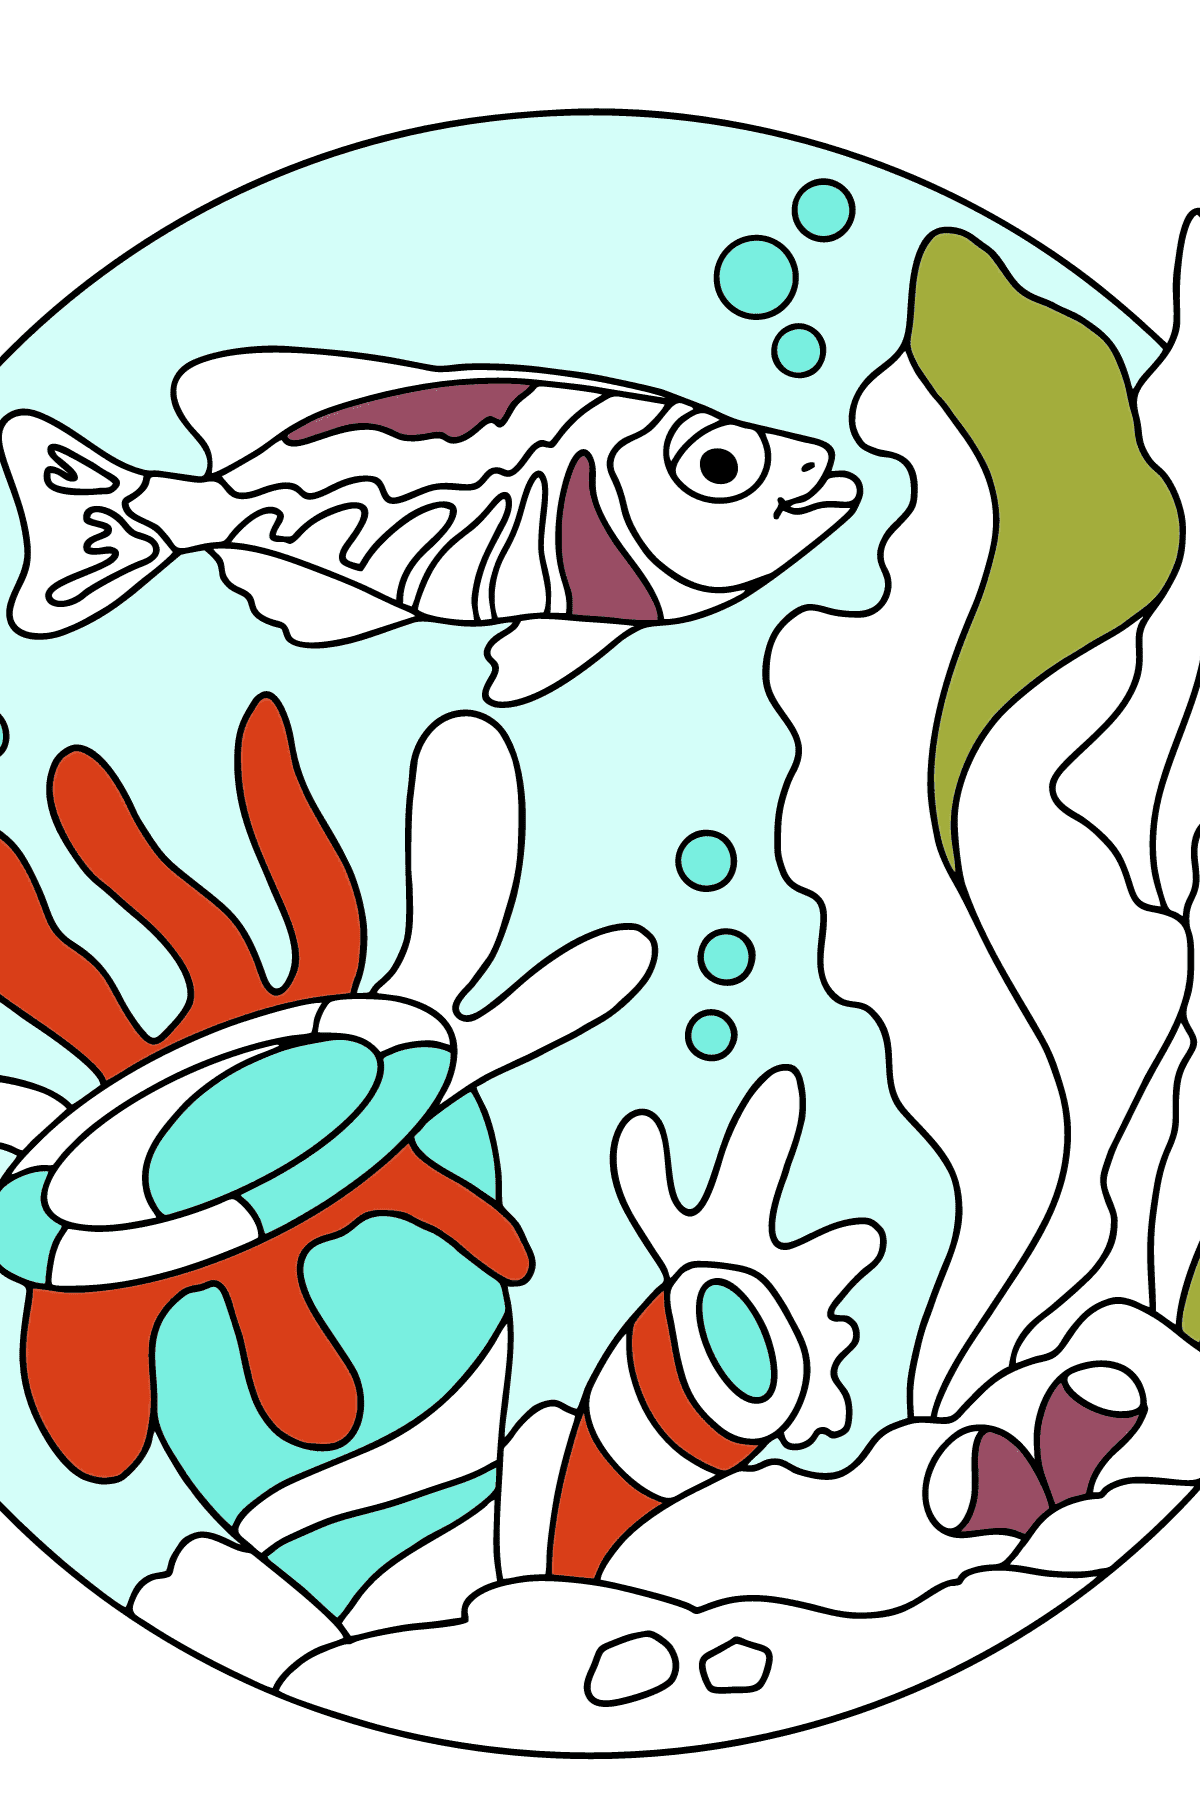 Dibujo para Colorear - Un hermoso pez - Dibujos para Colorear para Niños